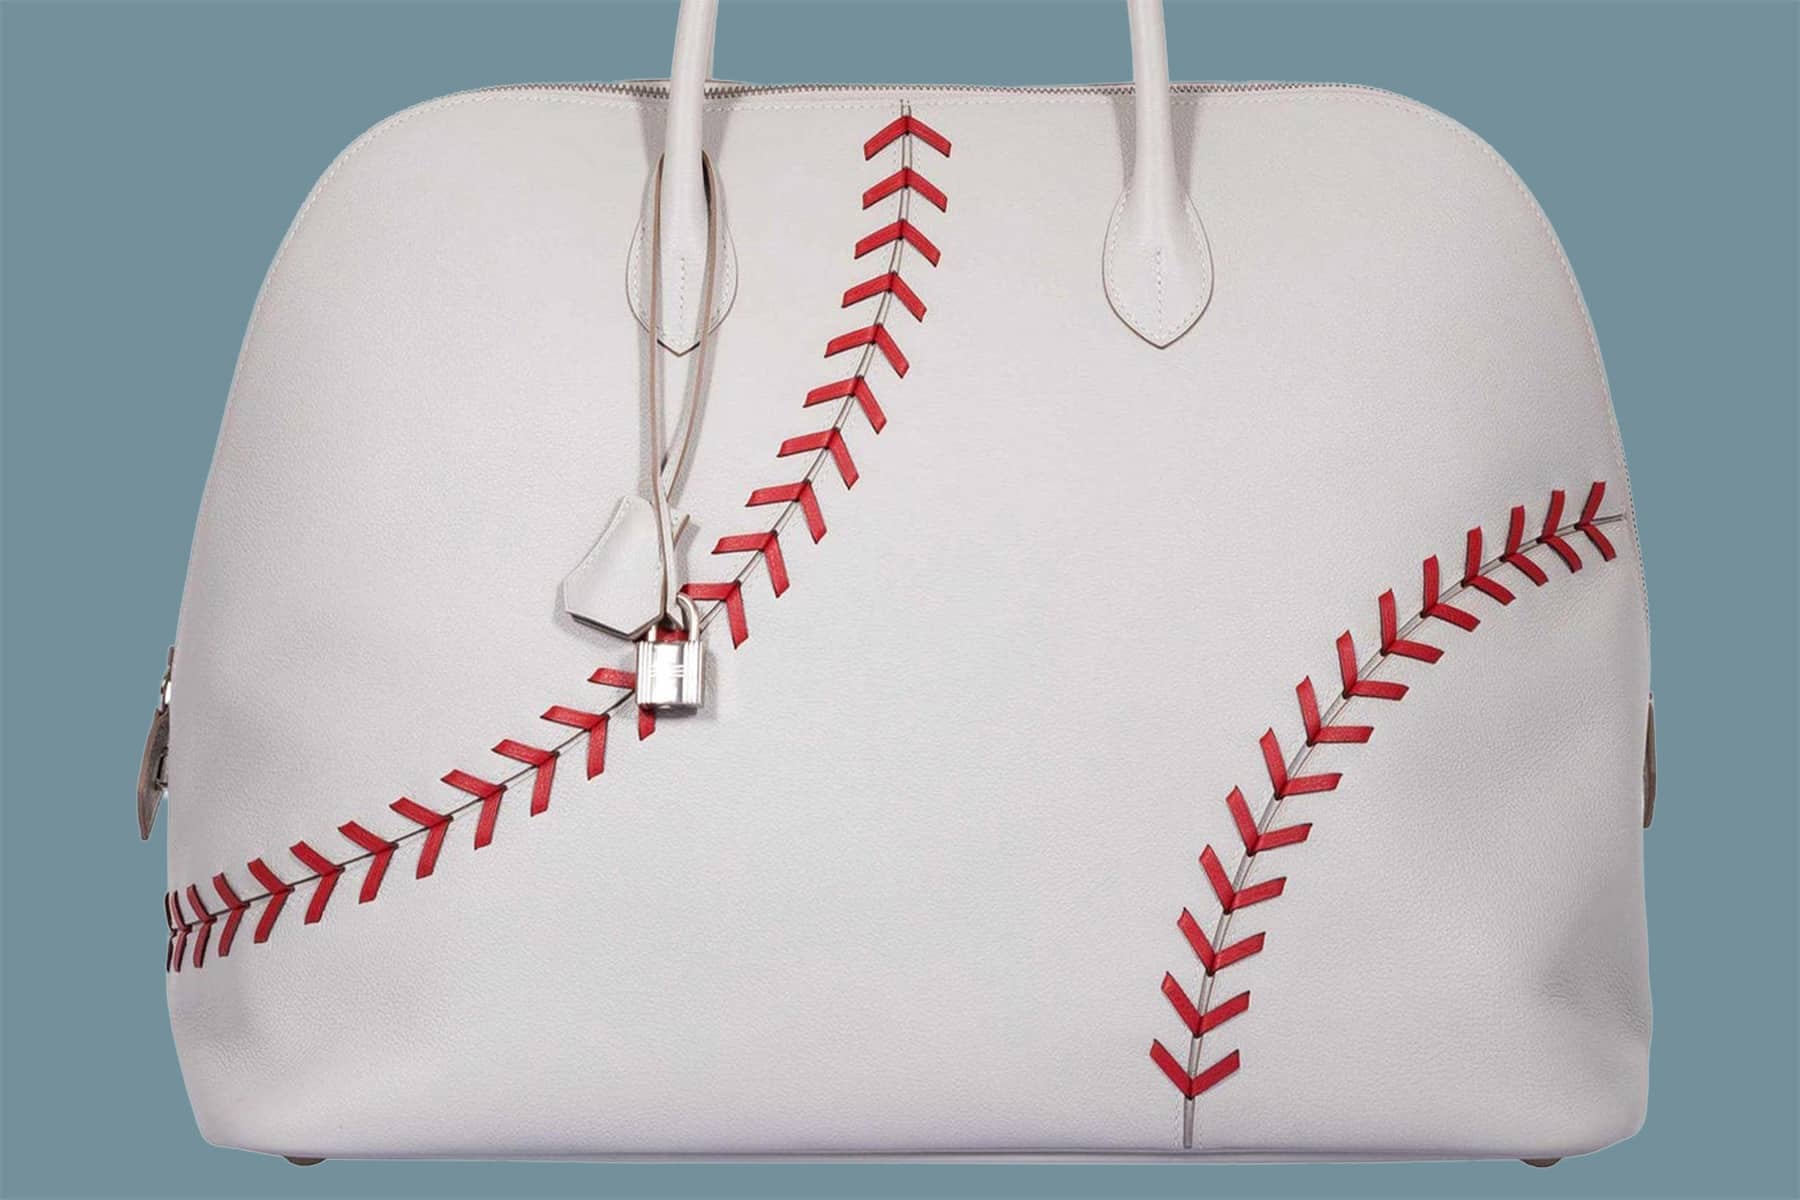 This Hermès Baseball Bag Is, Ahem, a Home Run